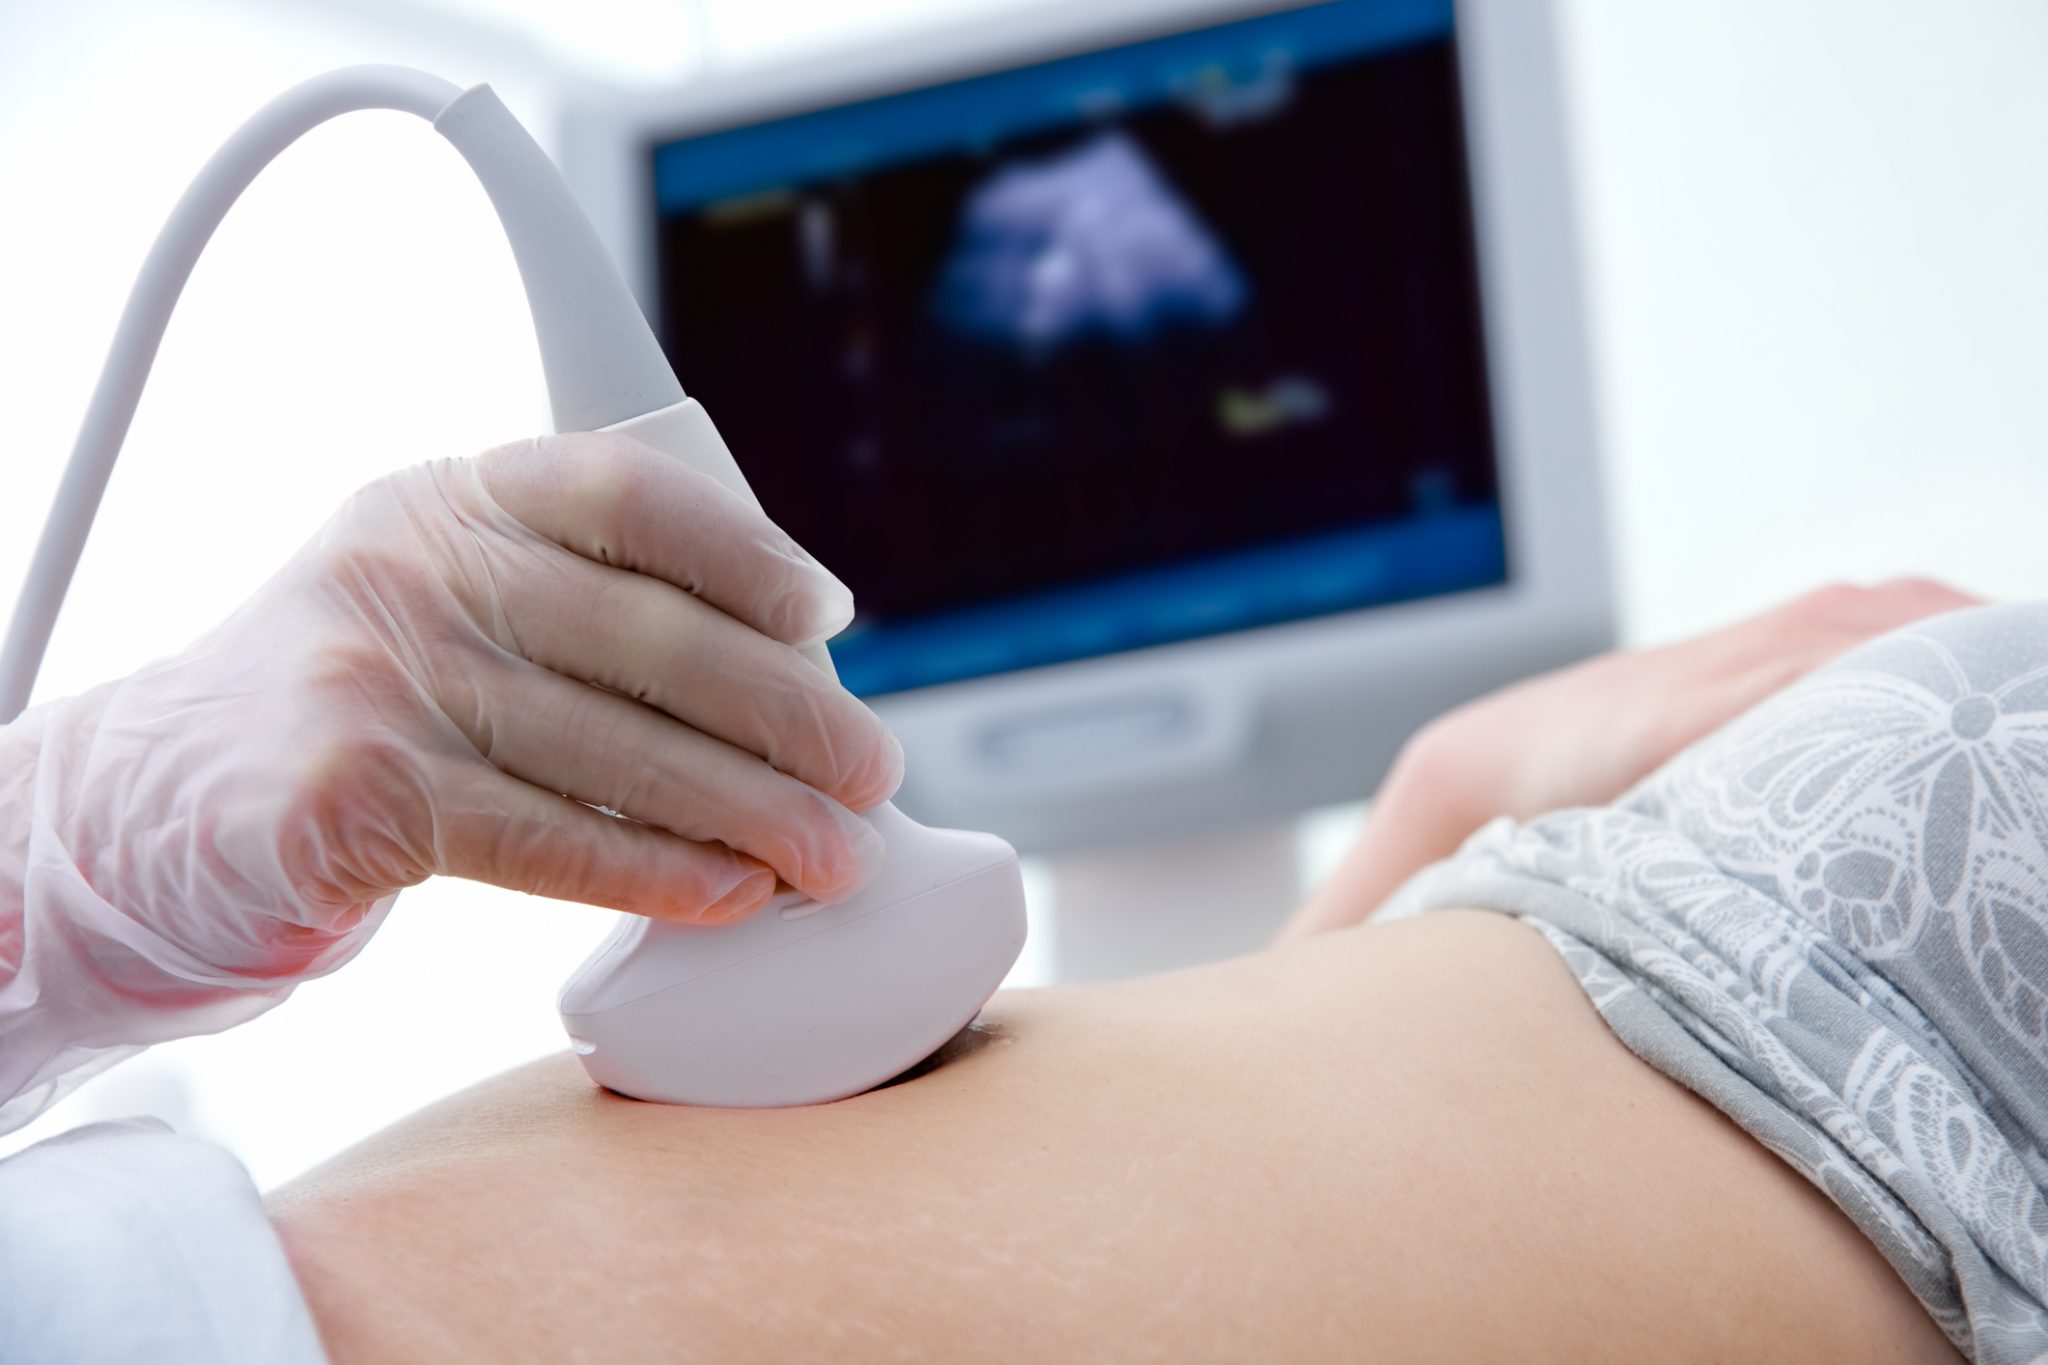 Prefeitura de Guanambi vai comprar aparelhos de ultrassom para reforço da saúde